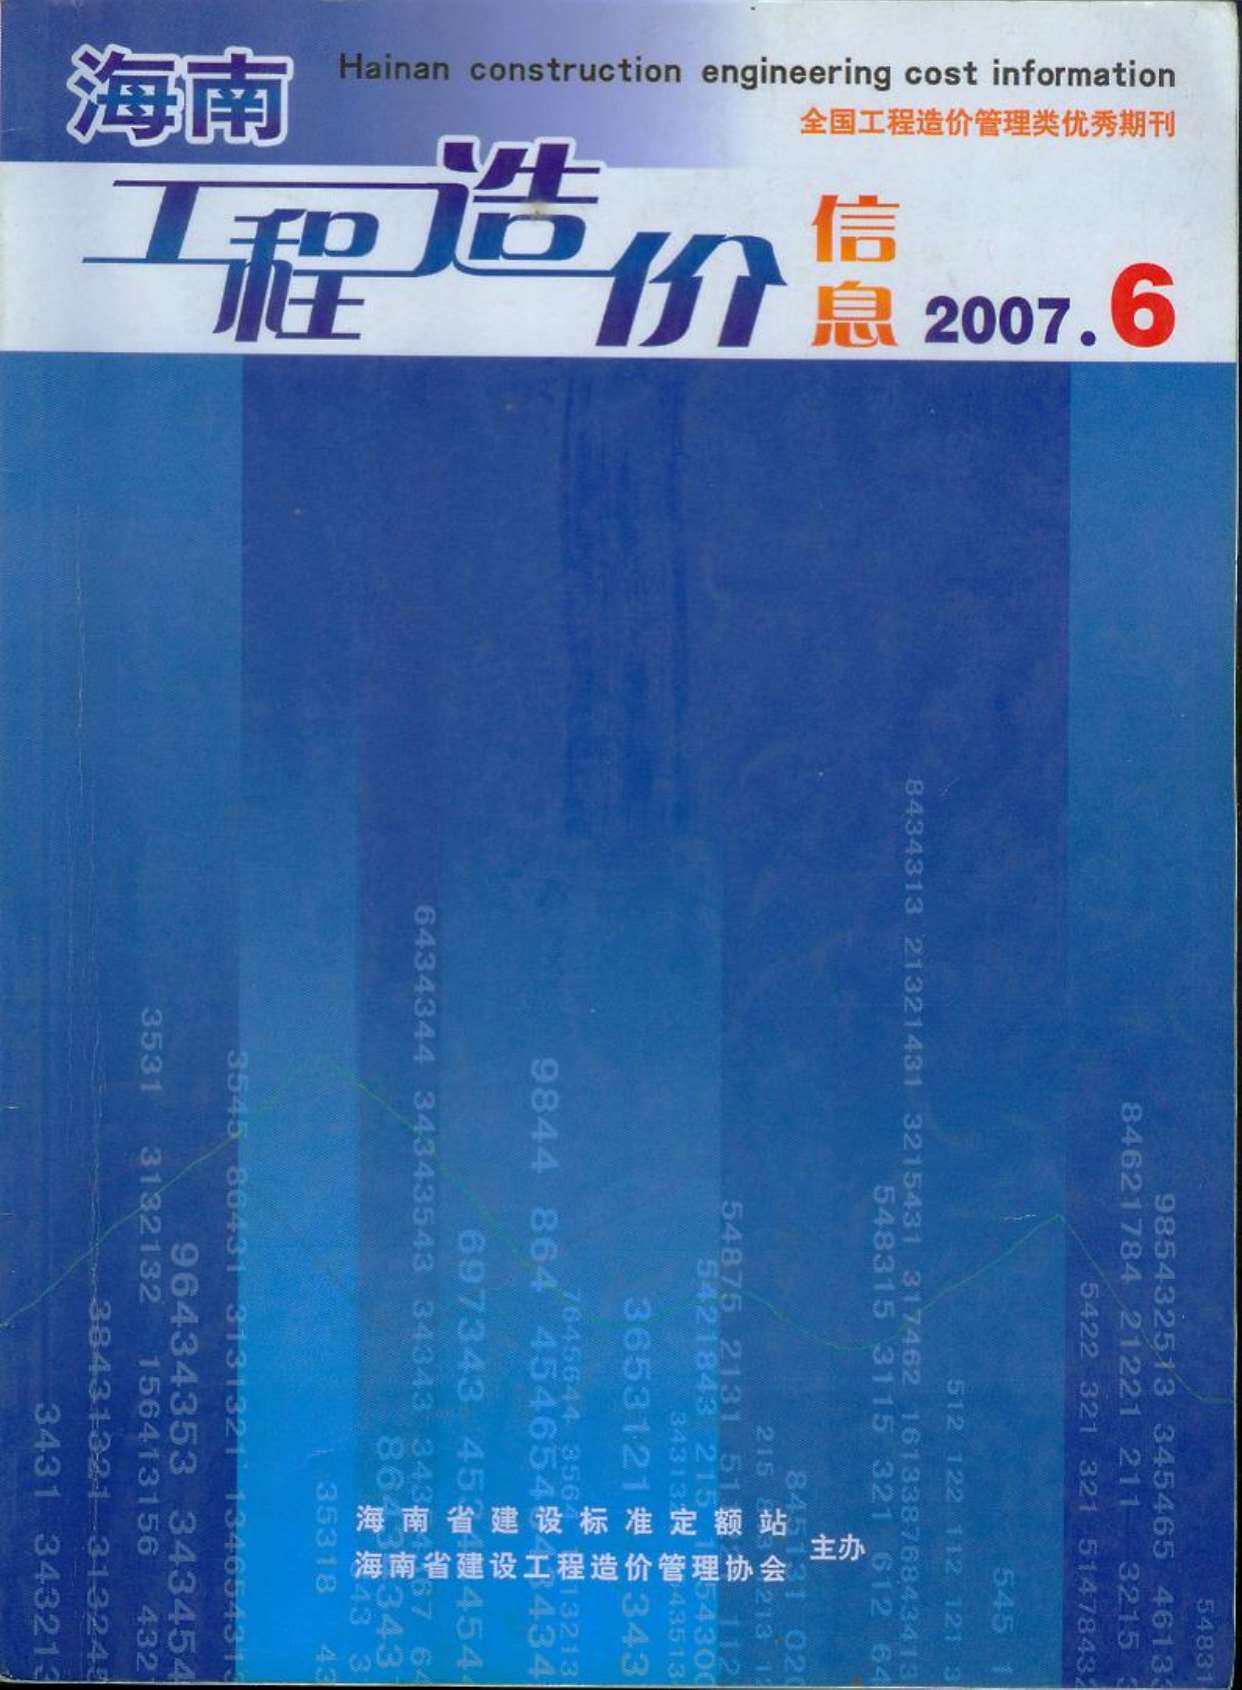 海南省2007年第6期工程造价信息pdf电子版